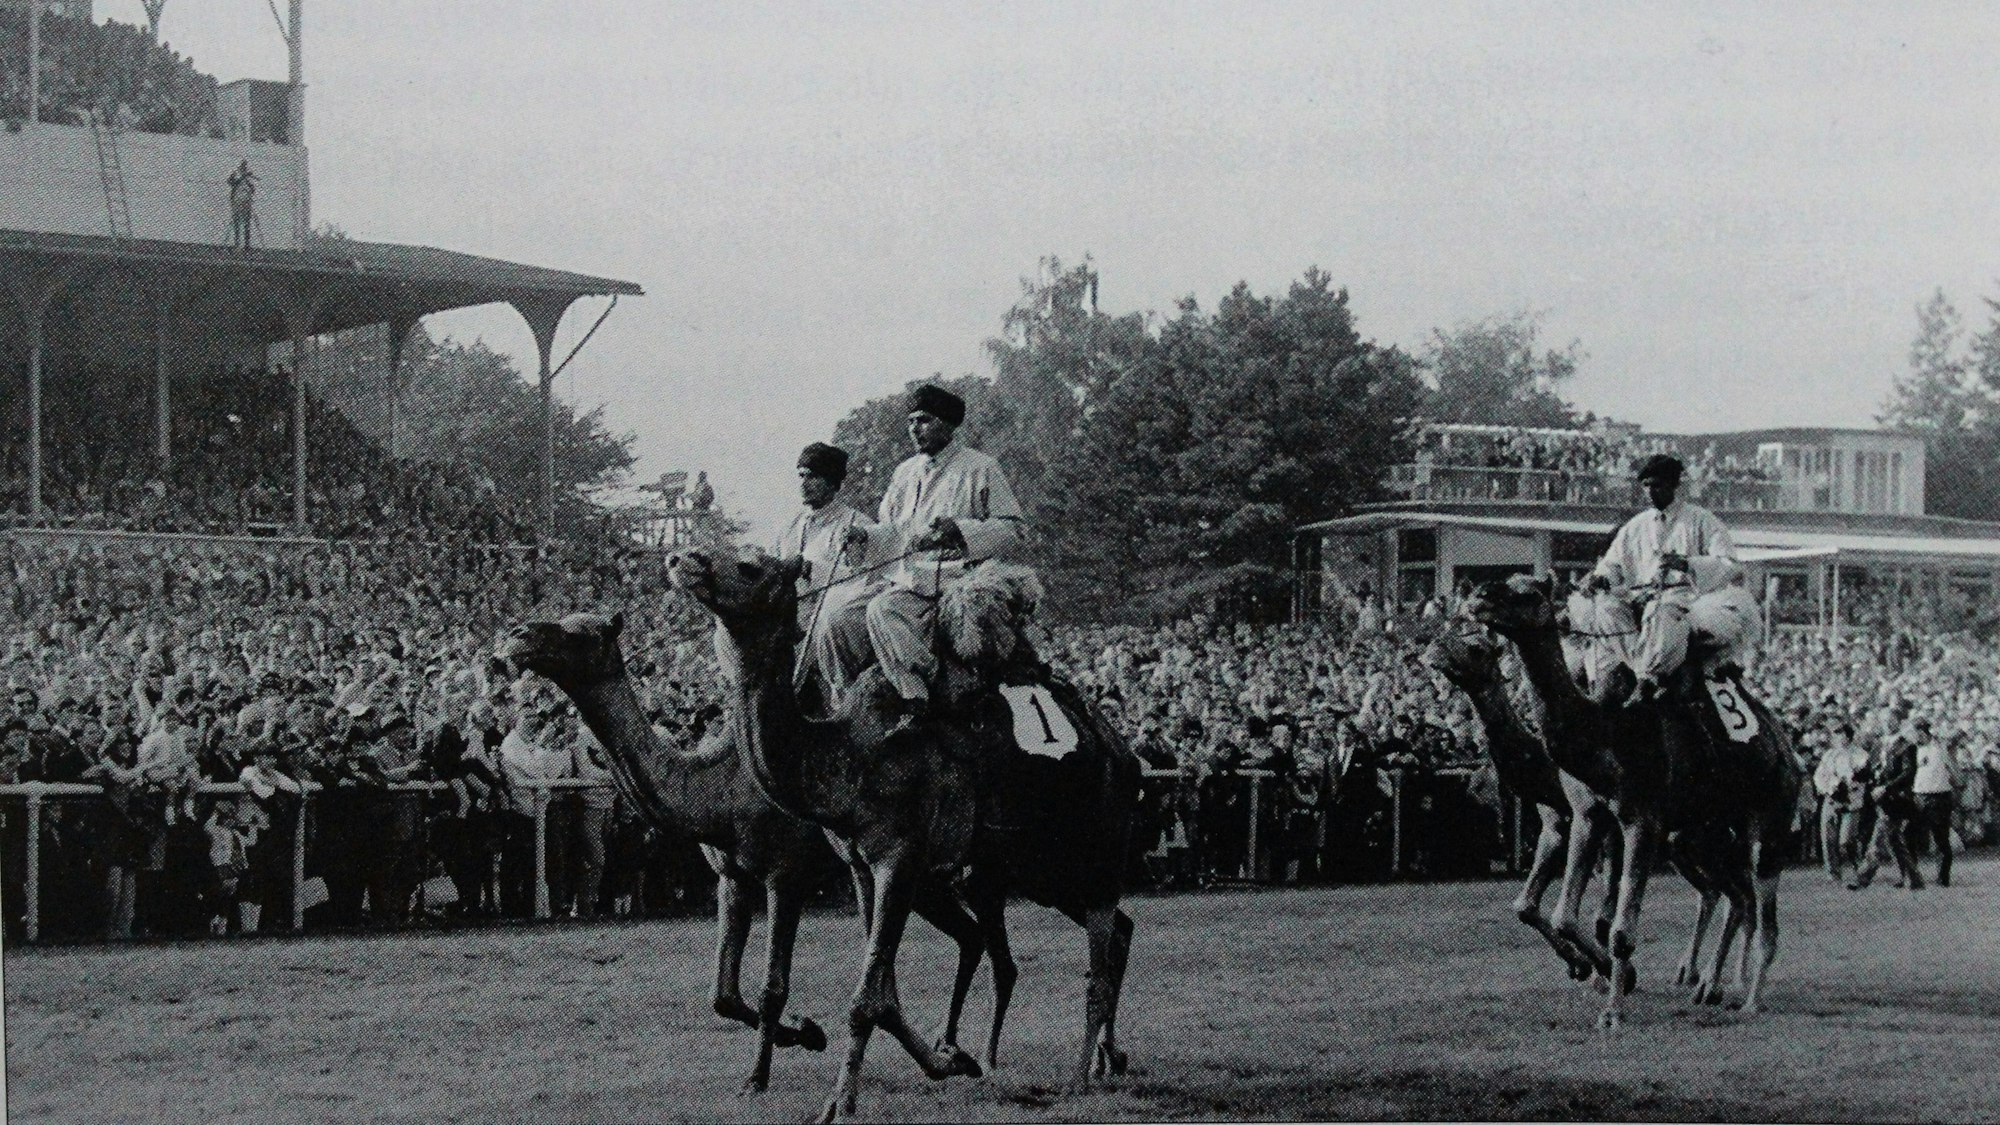 Die Rennbahn mit vier Kamelen und Reitern im Vordergrund und Publikum im Hintergrund.